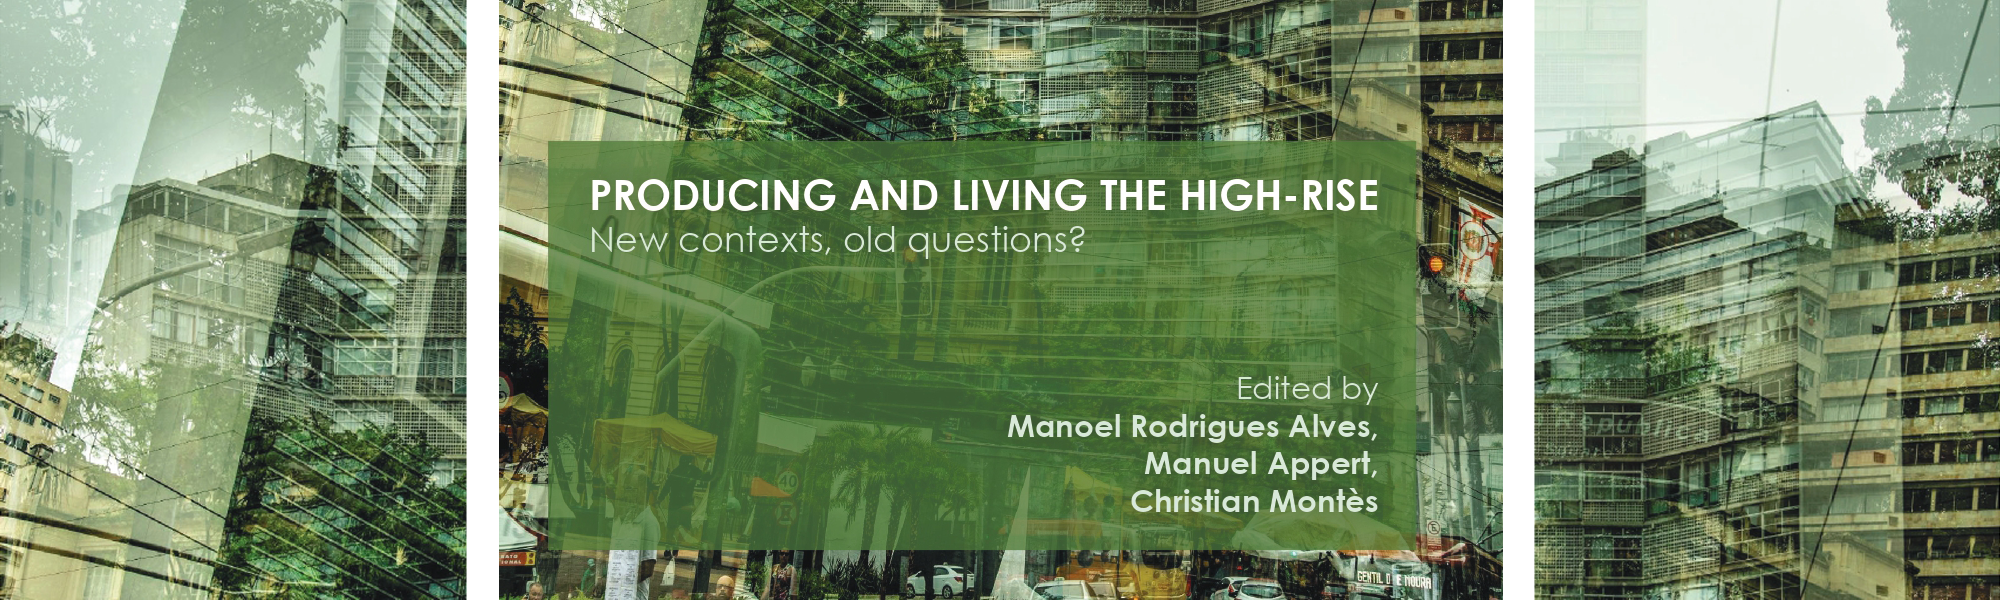 Livro publicado por professor do IAU discute os processos de urbanismo vertical e seus impactos em contextos globais